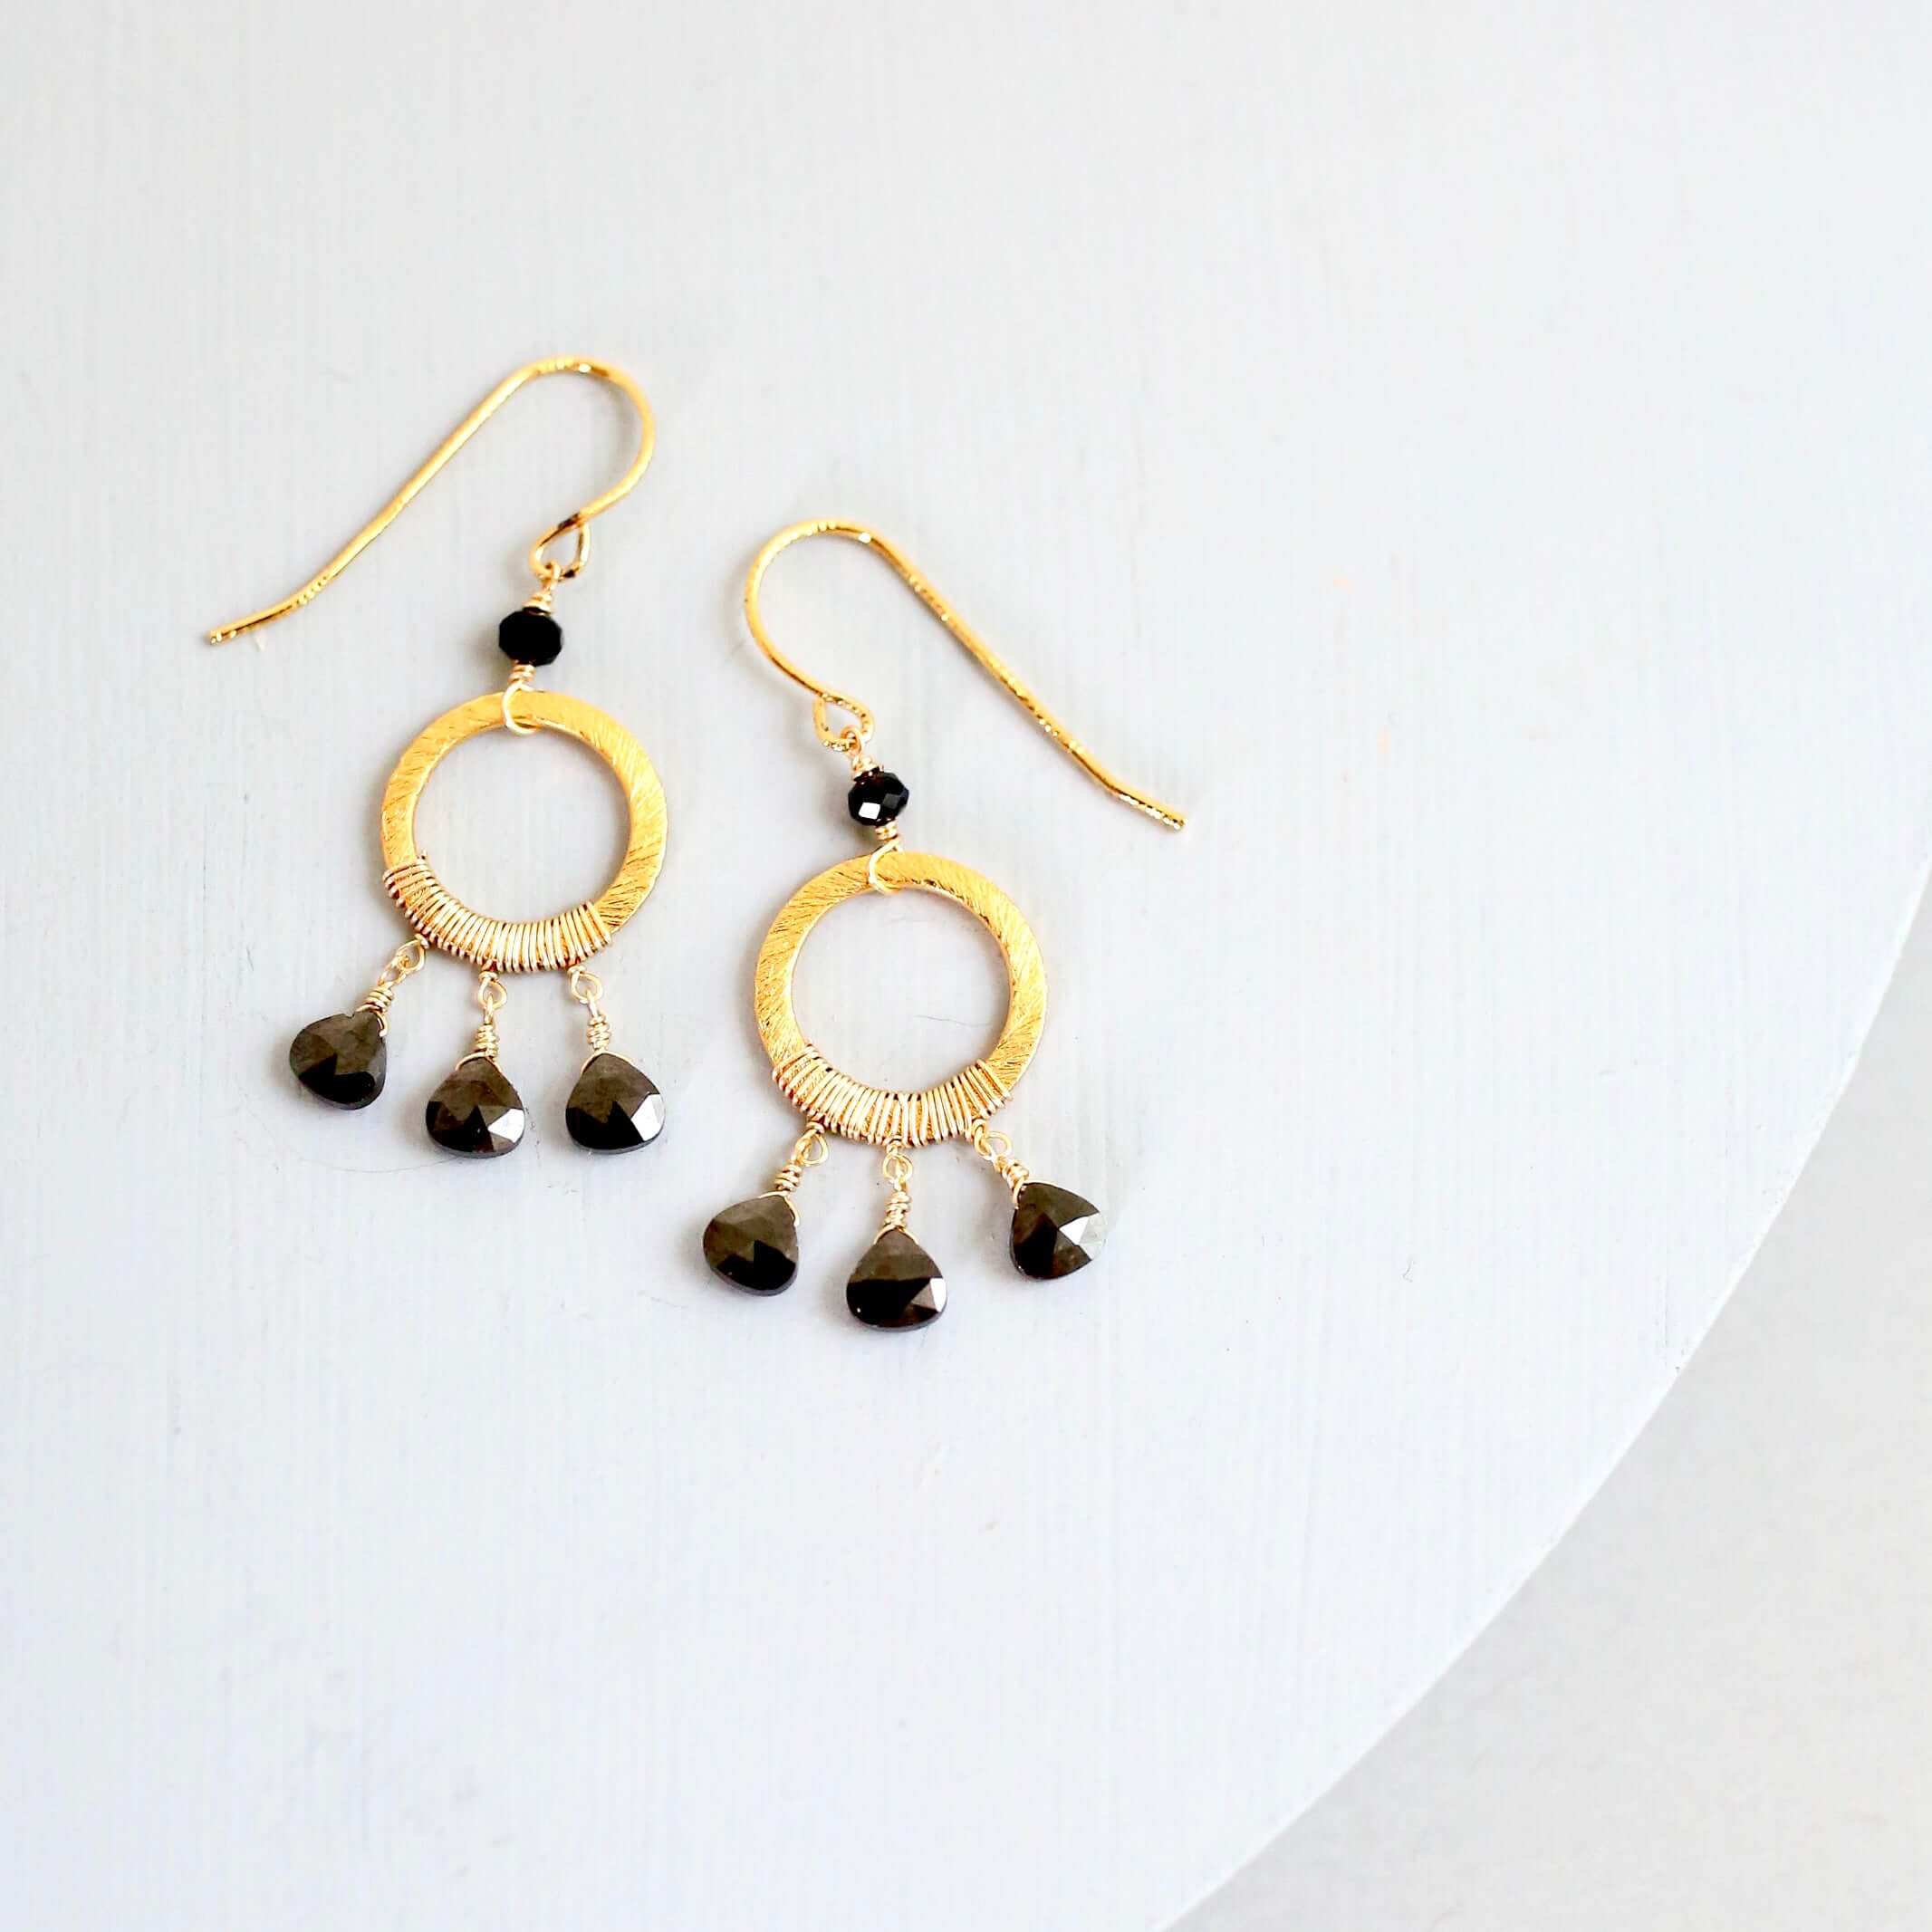 Boho Mini Dream Catcher Earrings with Black Spinel Gemstones